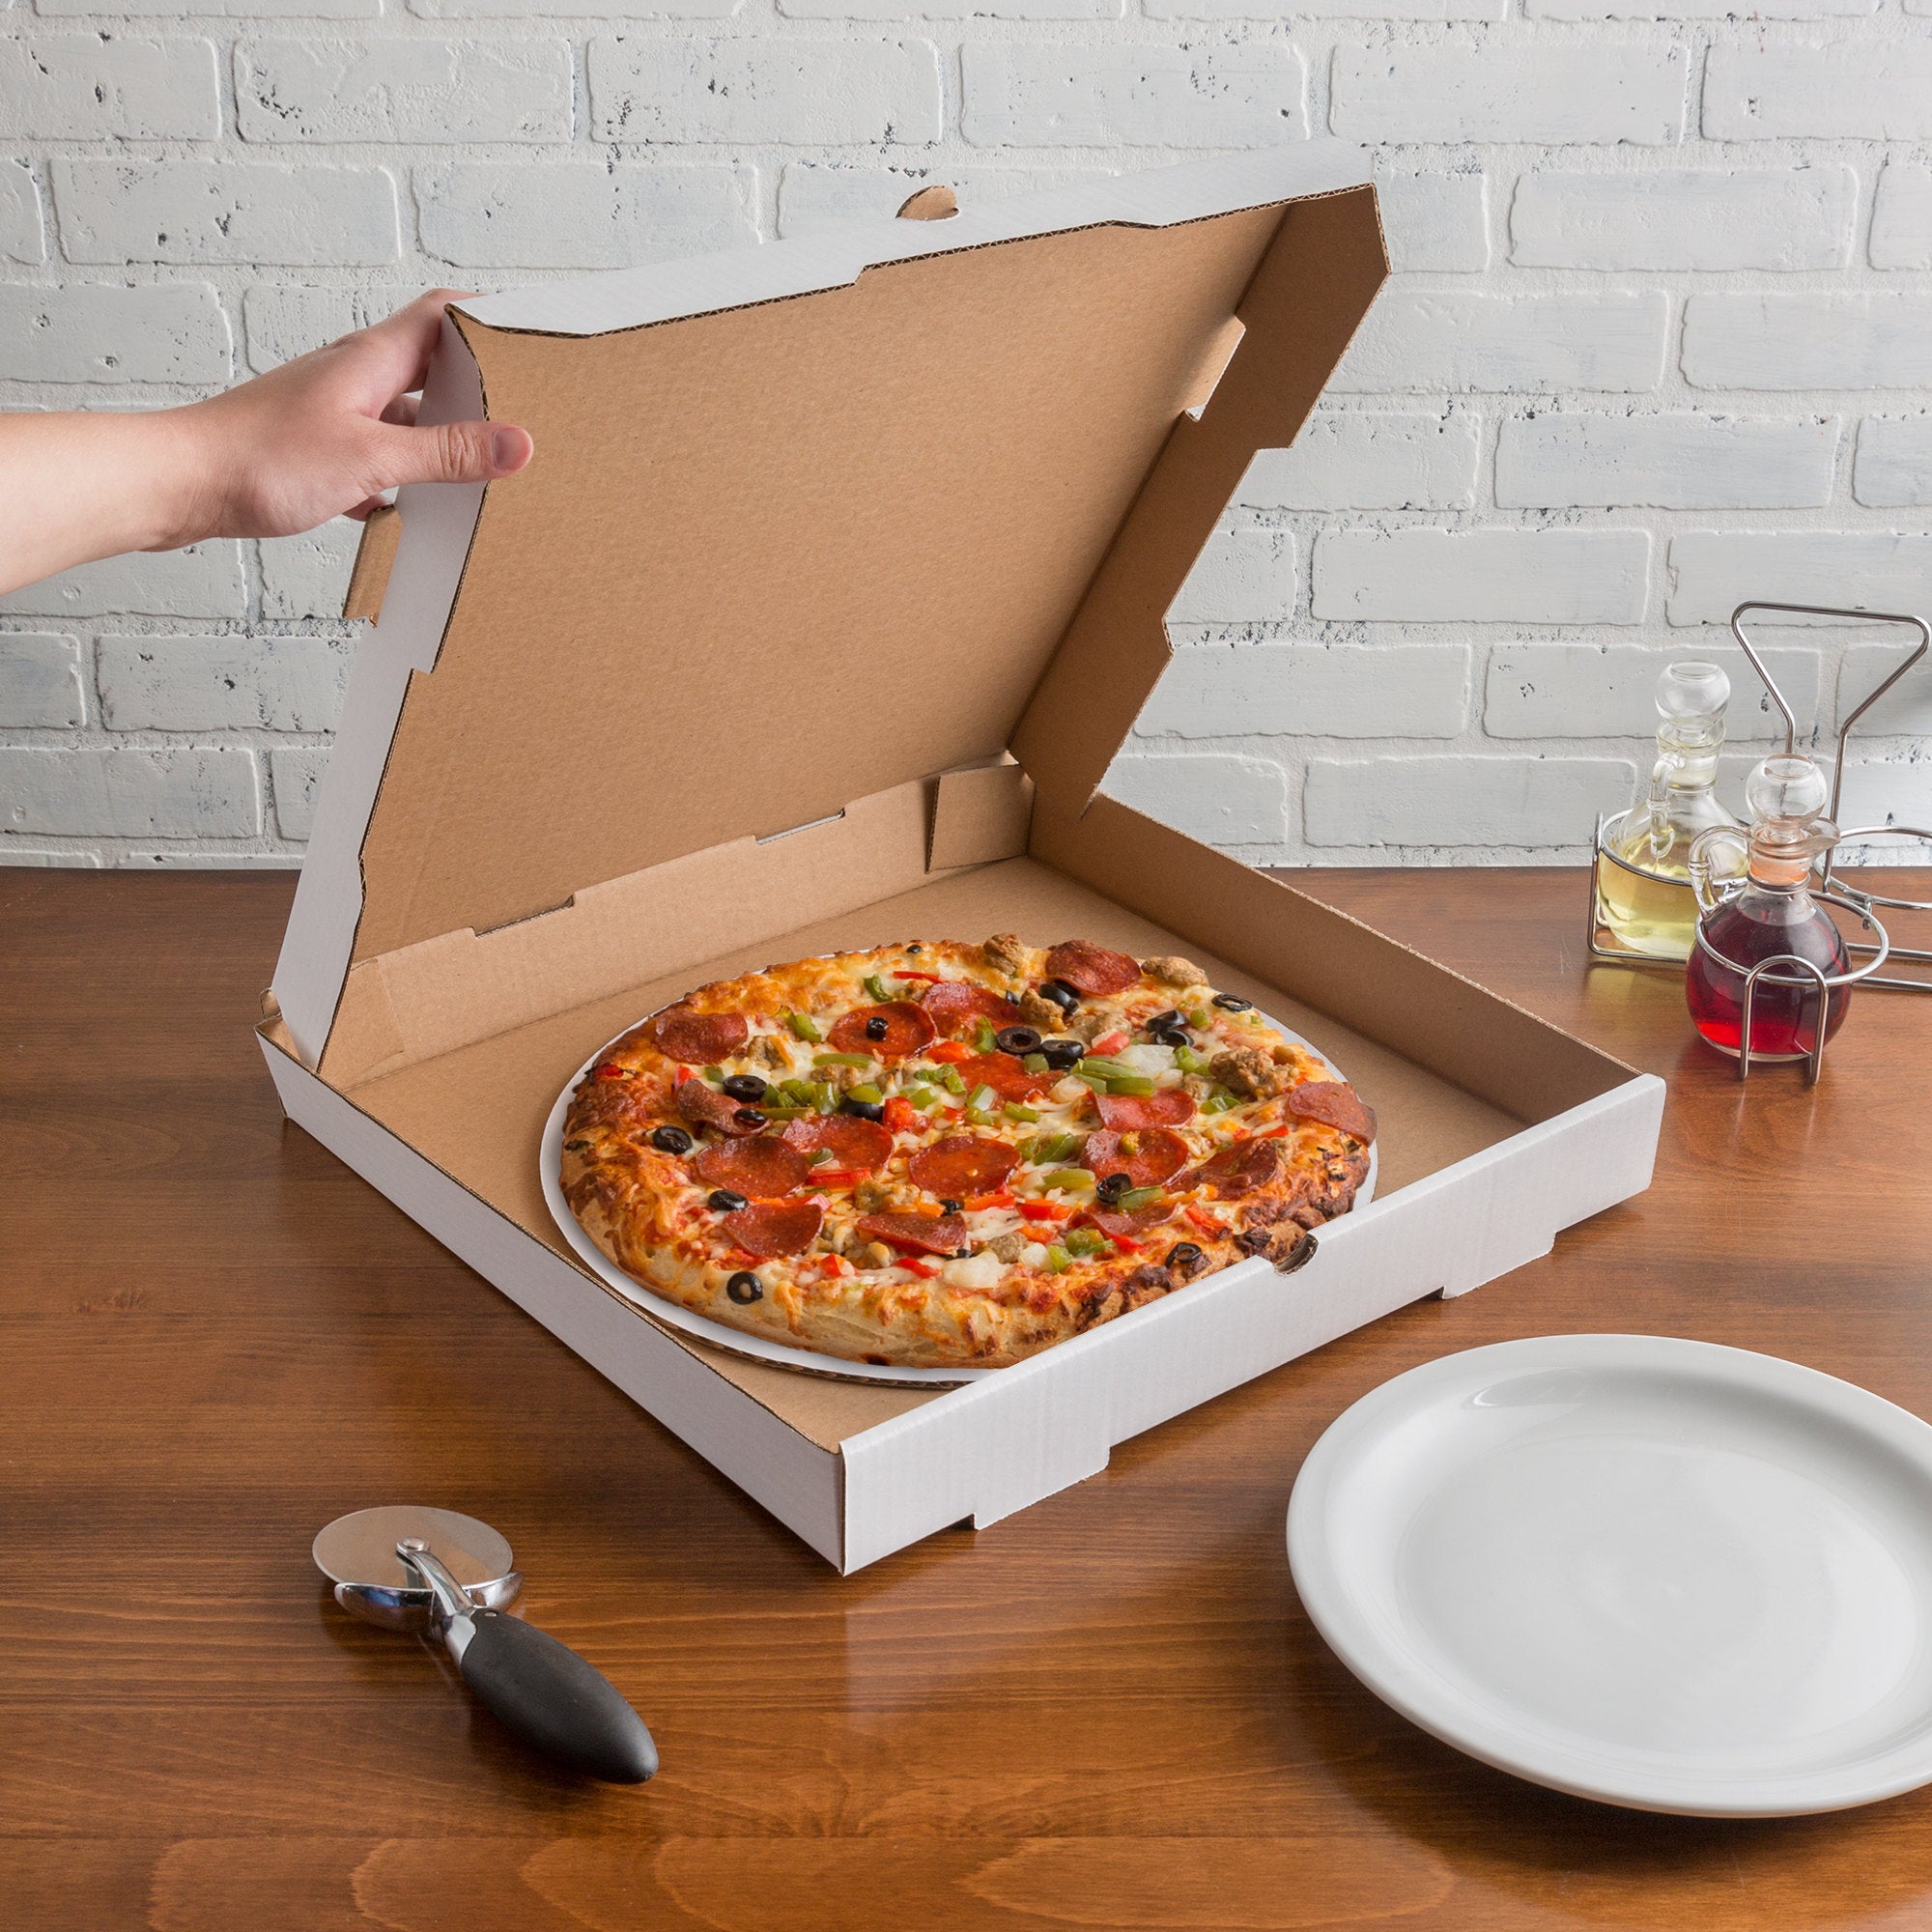 фото упаковки пиццы в фото 1